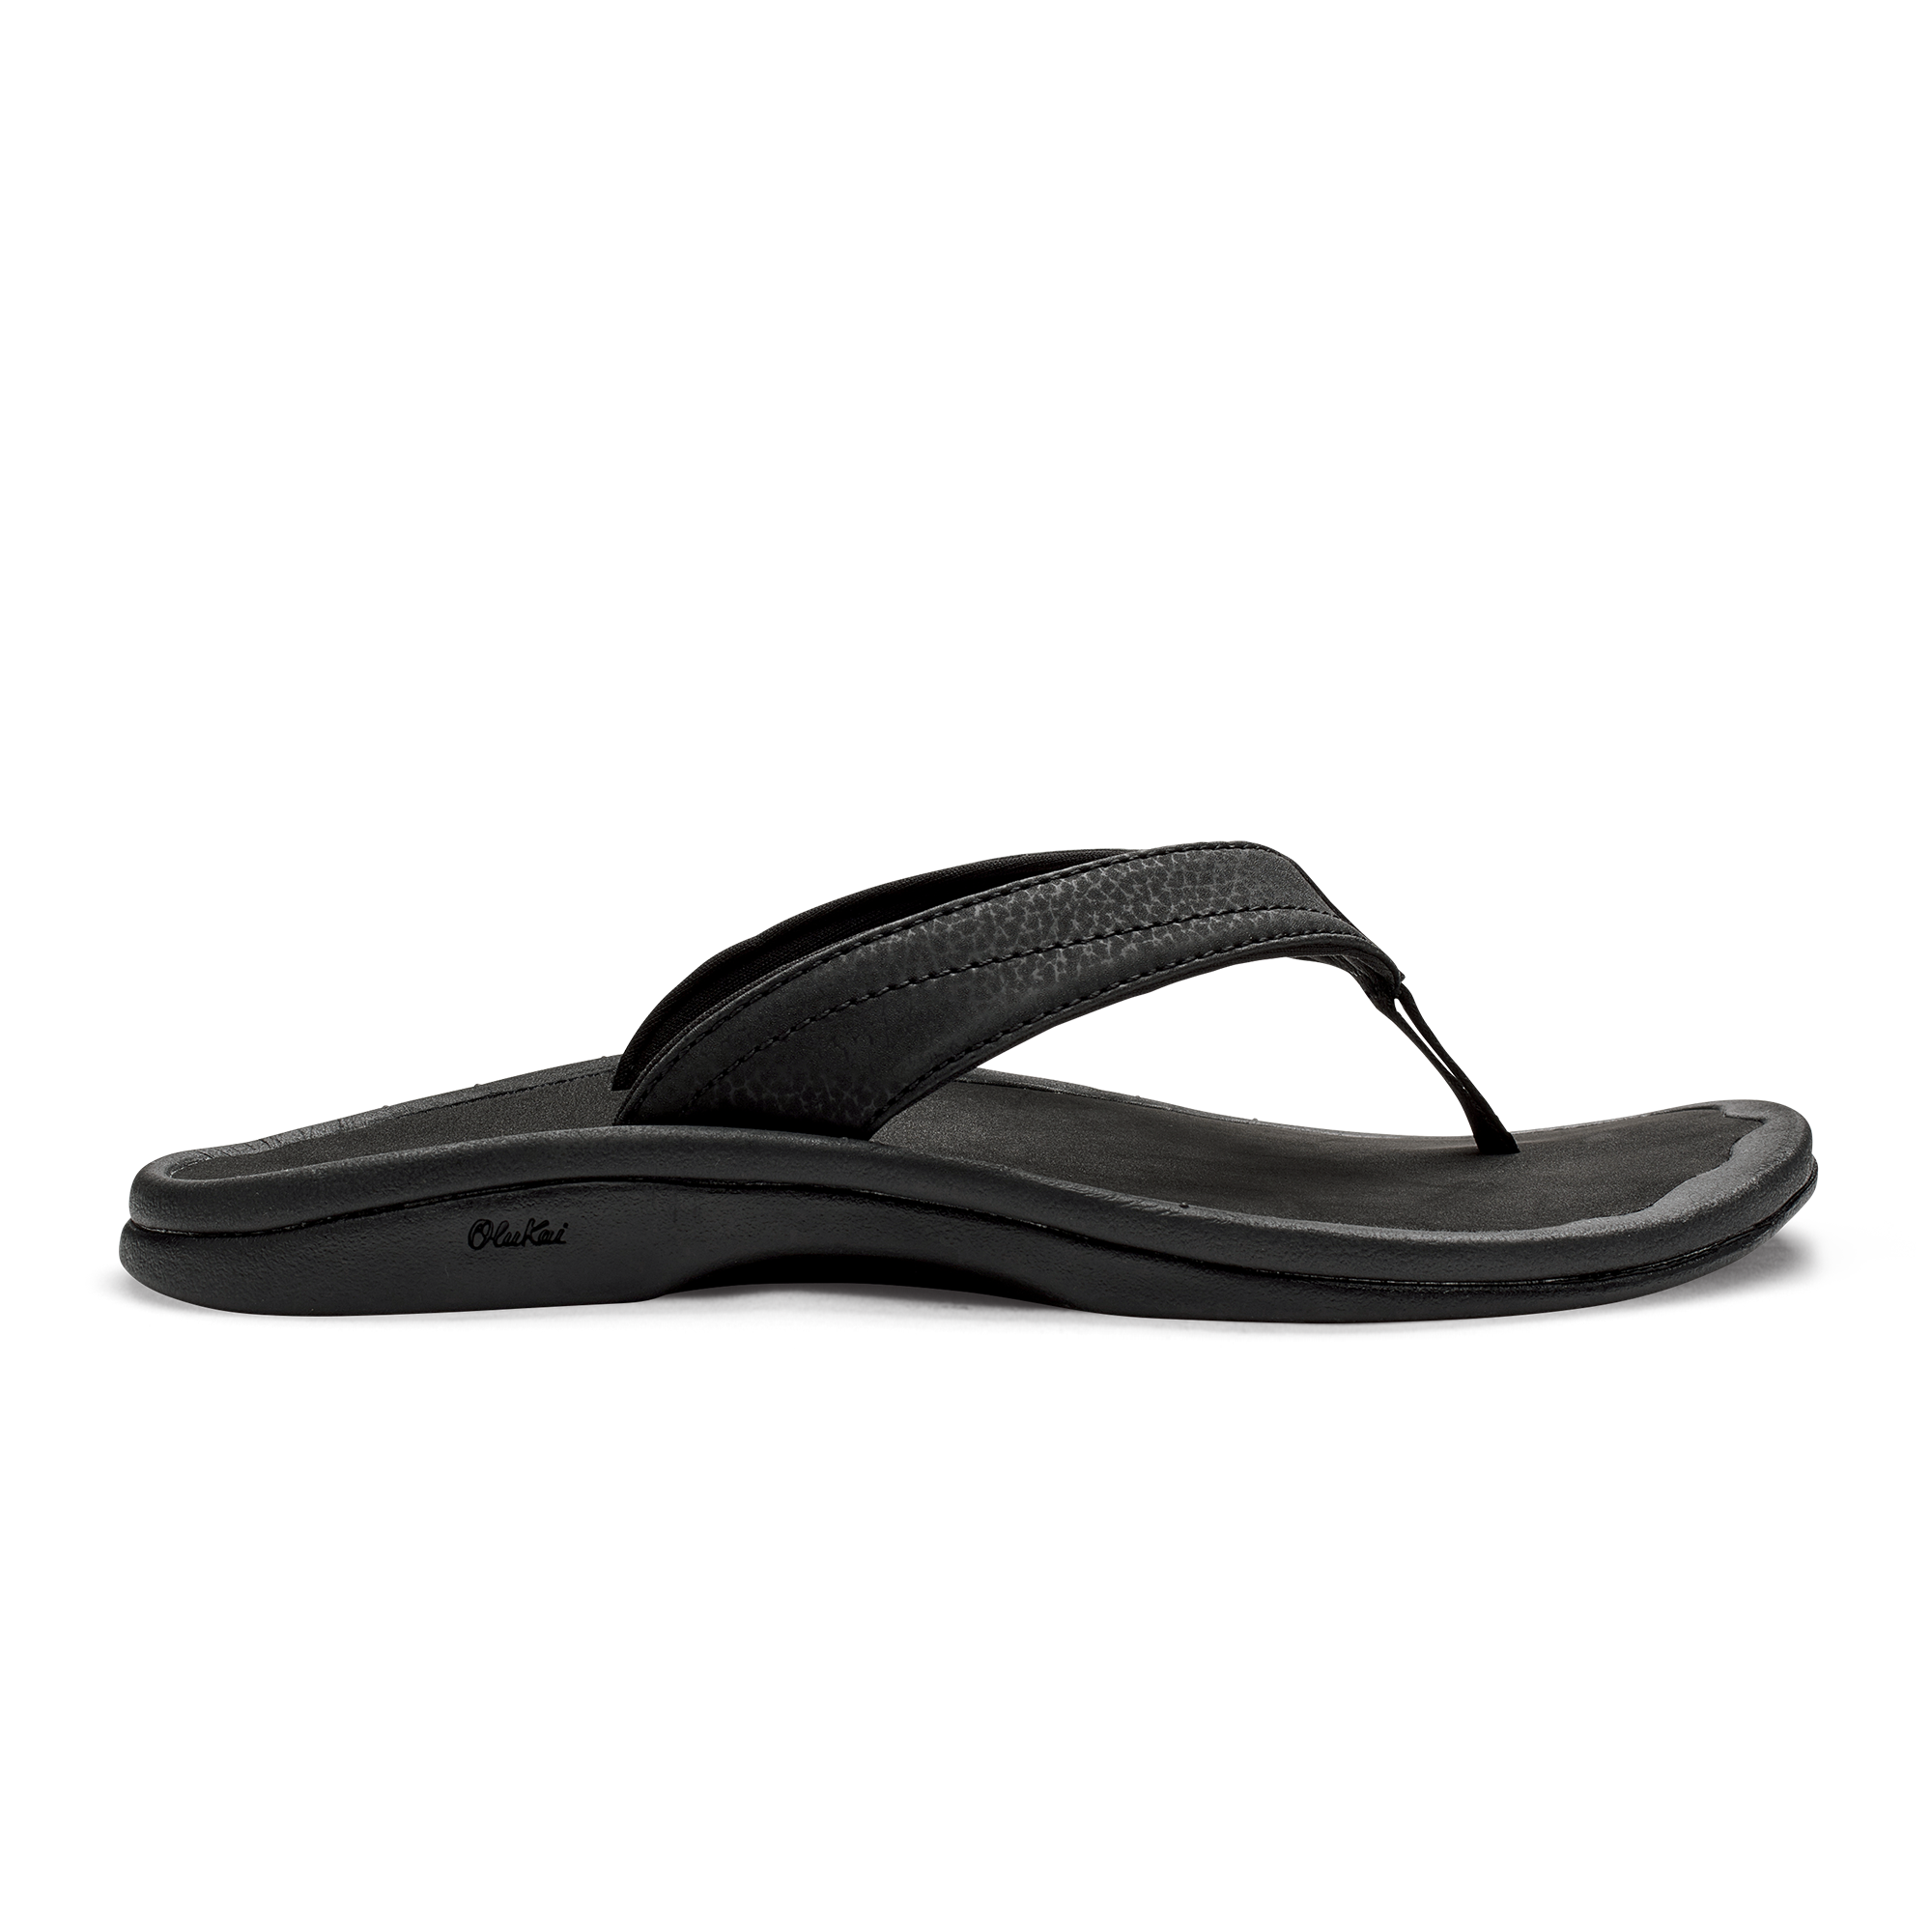 ‘Ohana Women's Beach Sandals & Flip Flops - Black | OluKai – OluKai Canada